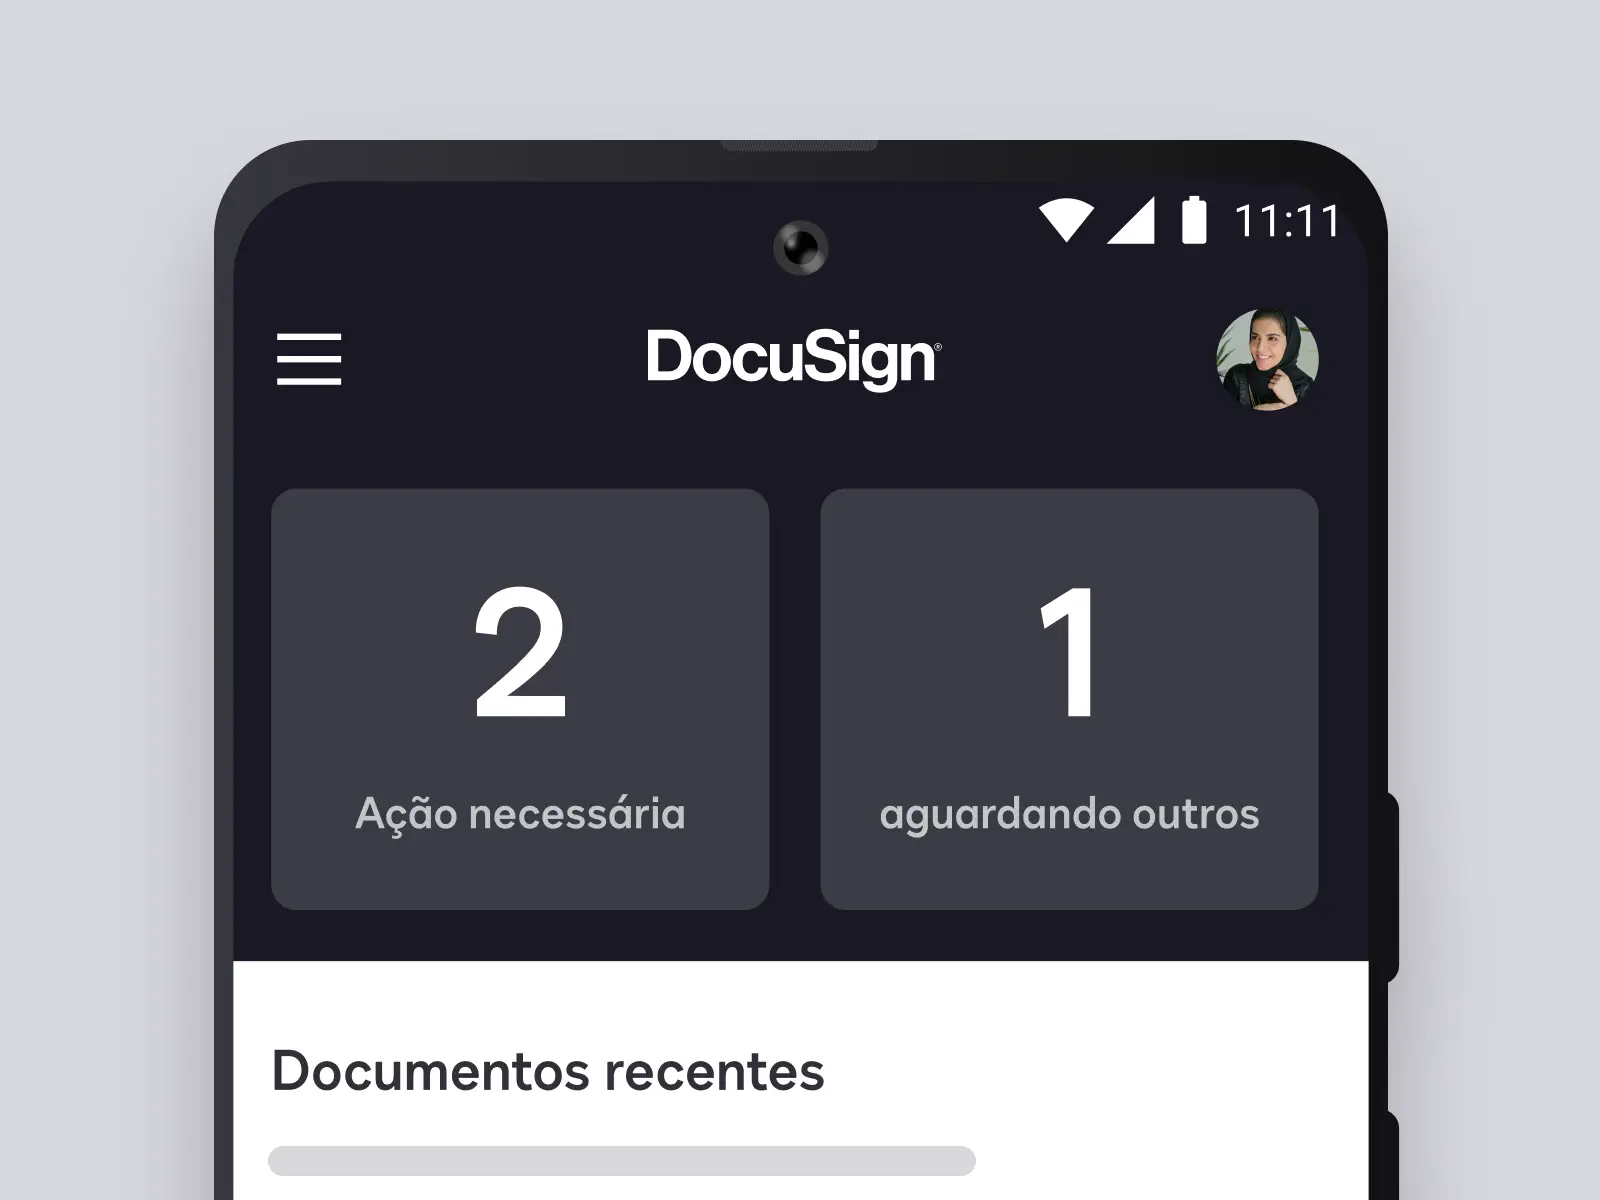 Tela de telefone mostrando o aplicativo DocuSign com documentos recentes e ações necessárias